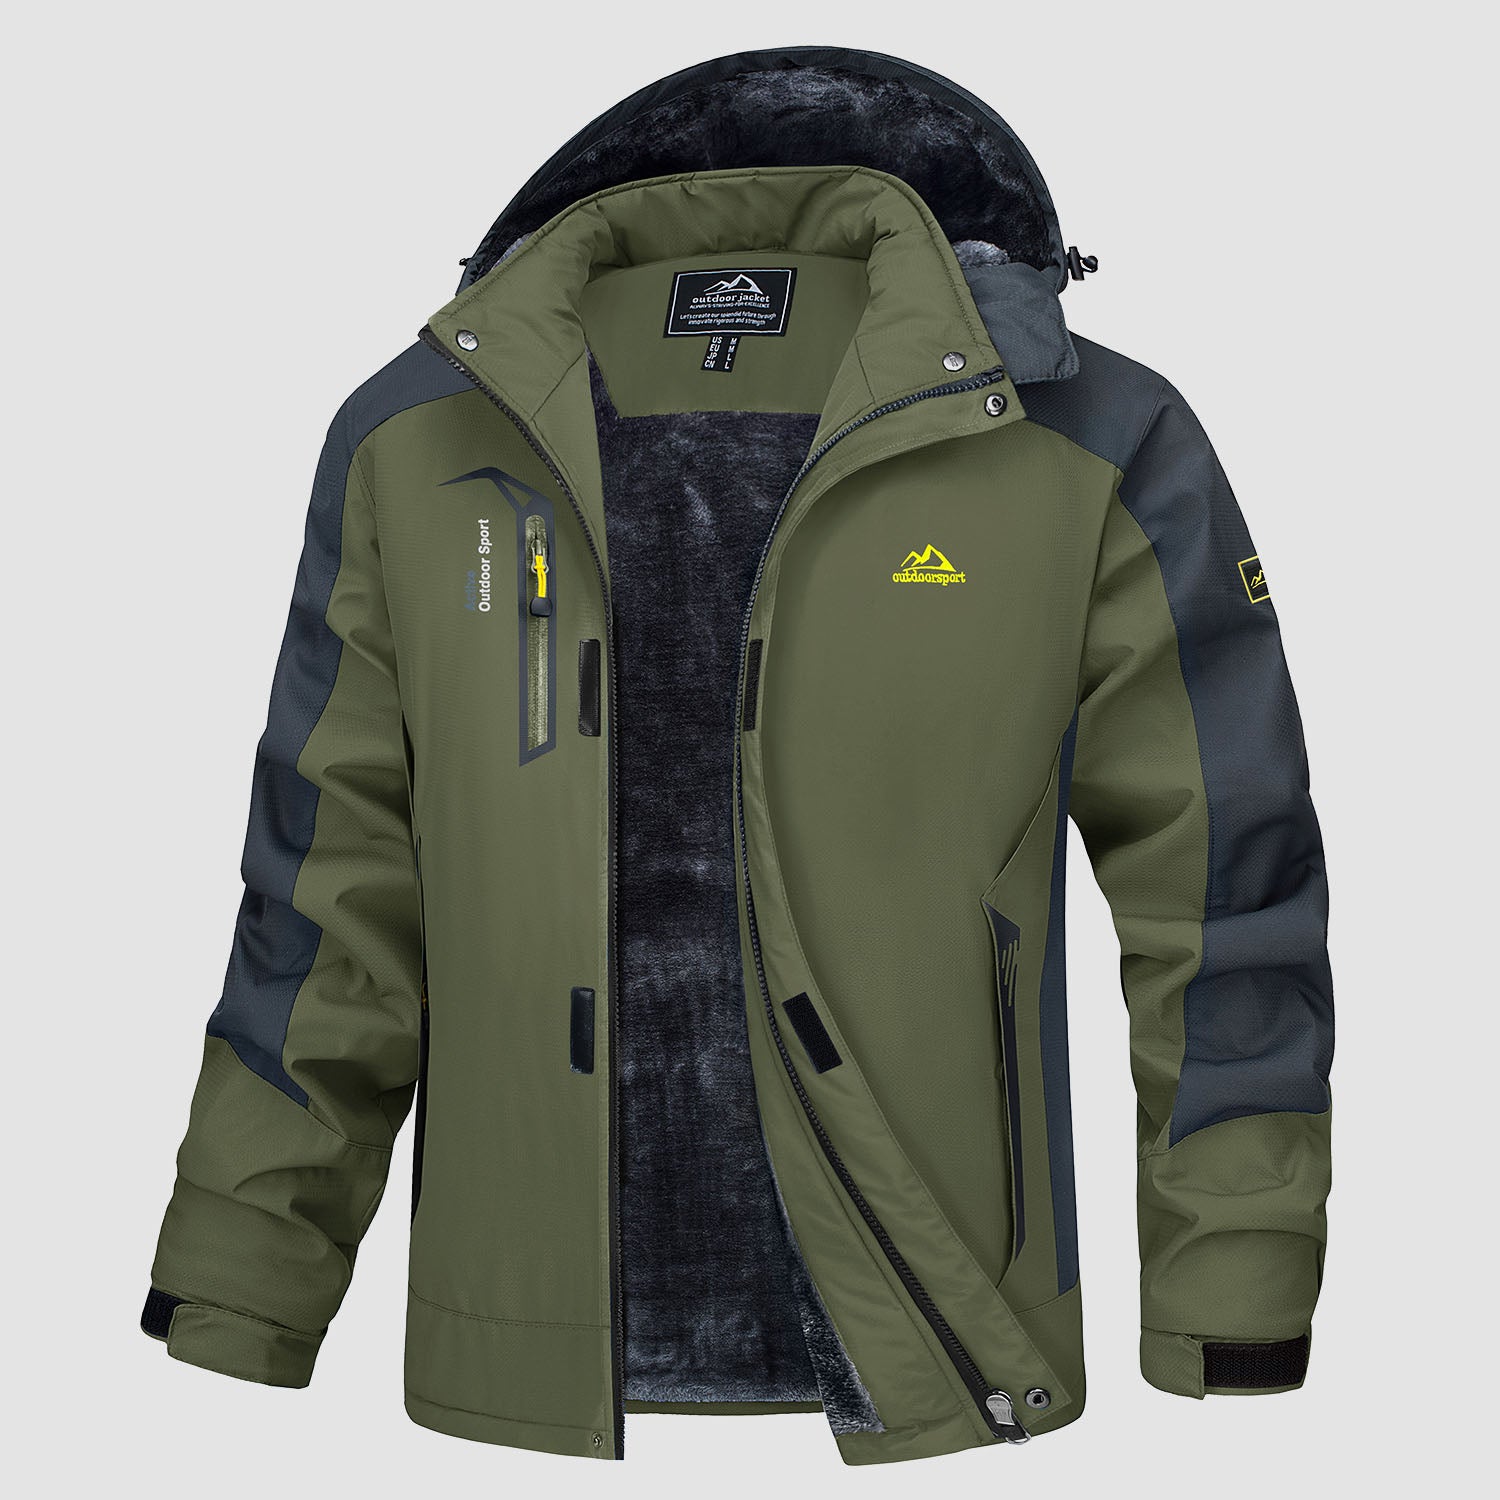 Men's Warm Fleece Jackets Waterproof Snow Parka Coats, Black Grey / L